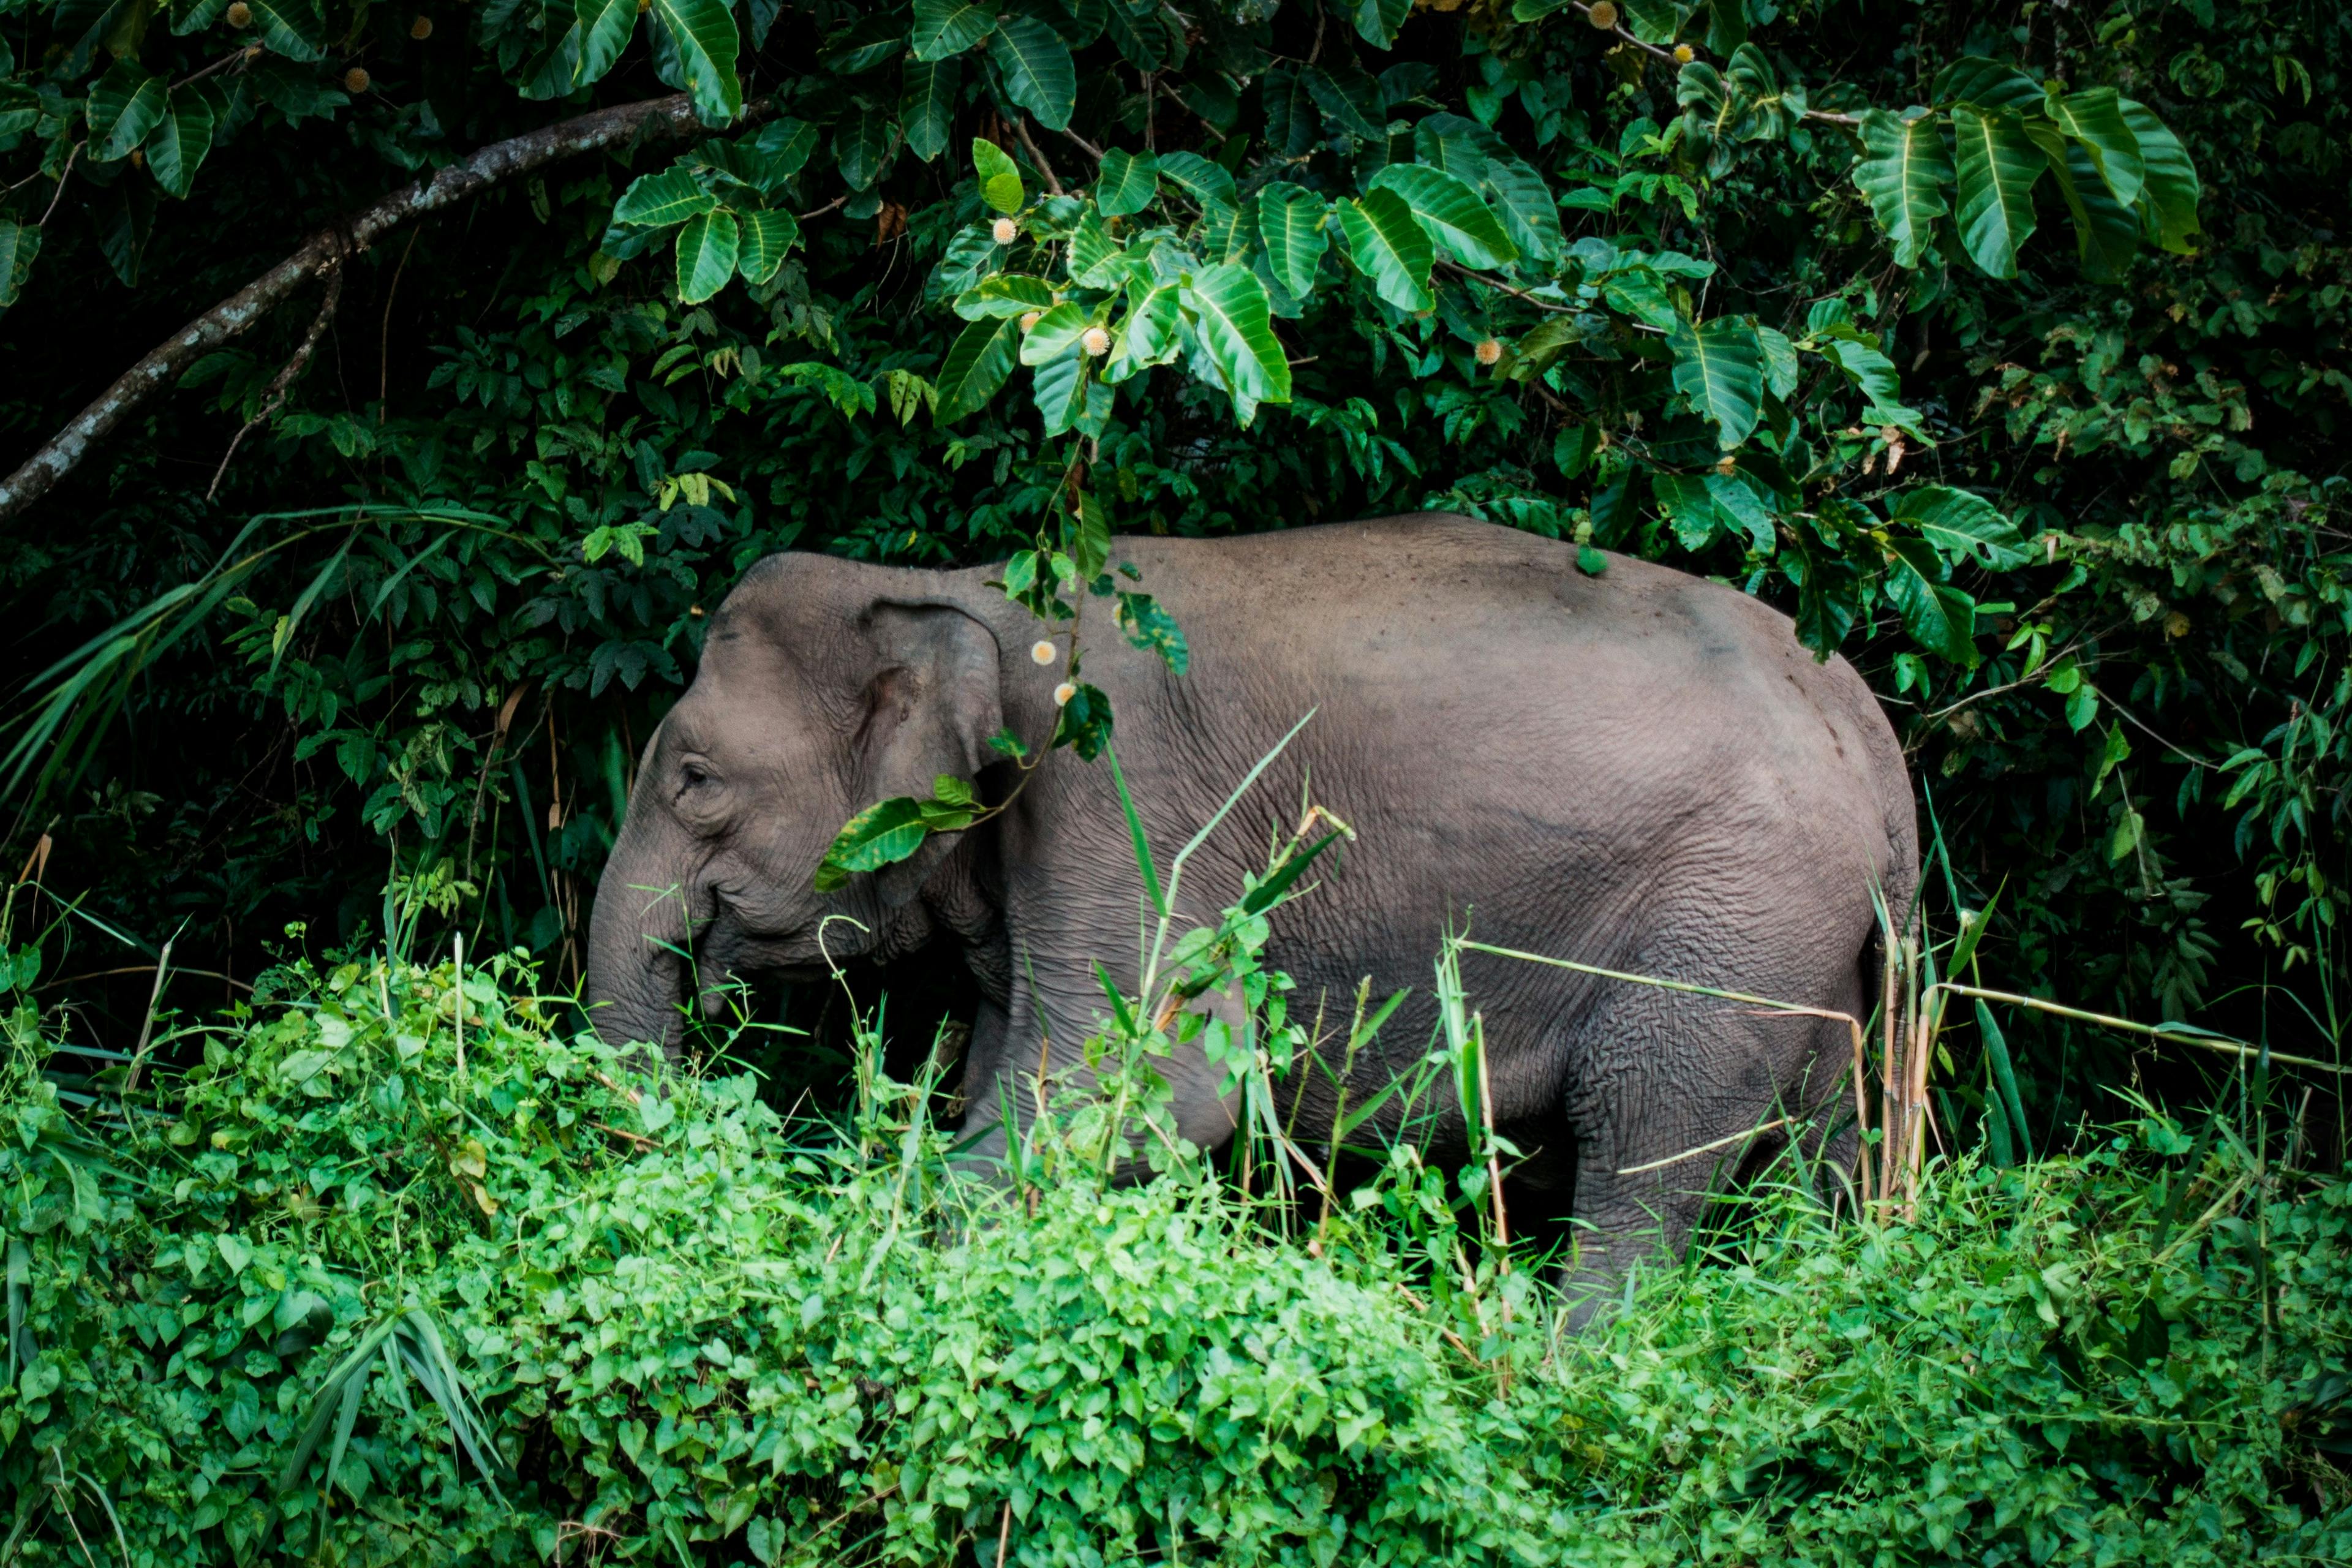 Elephant on the bank of Kinabatangan River, Malaysia.